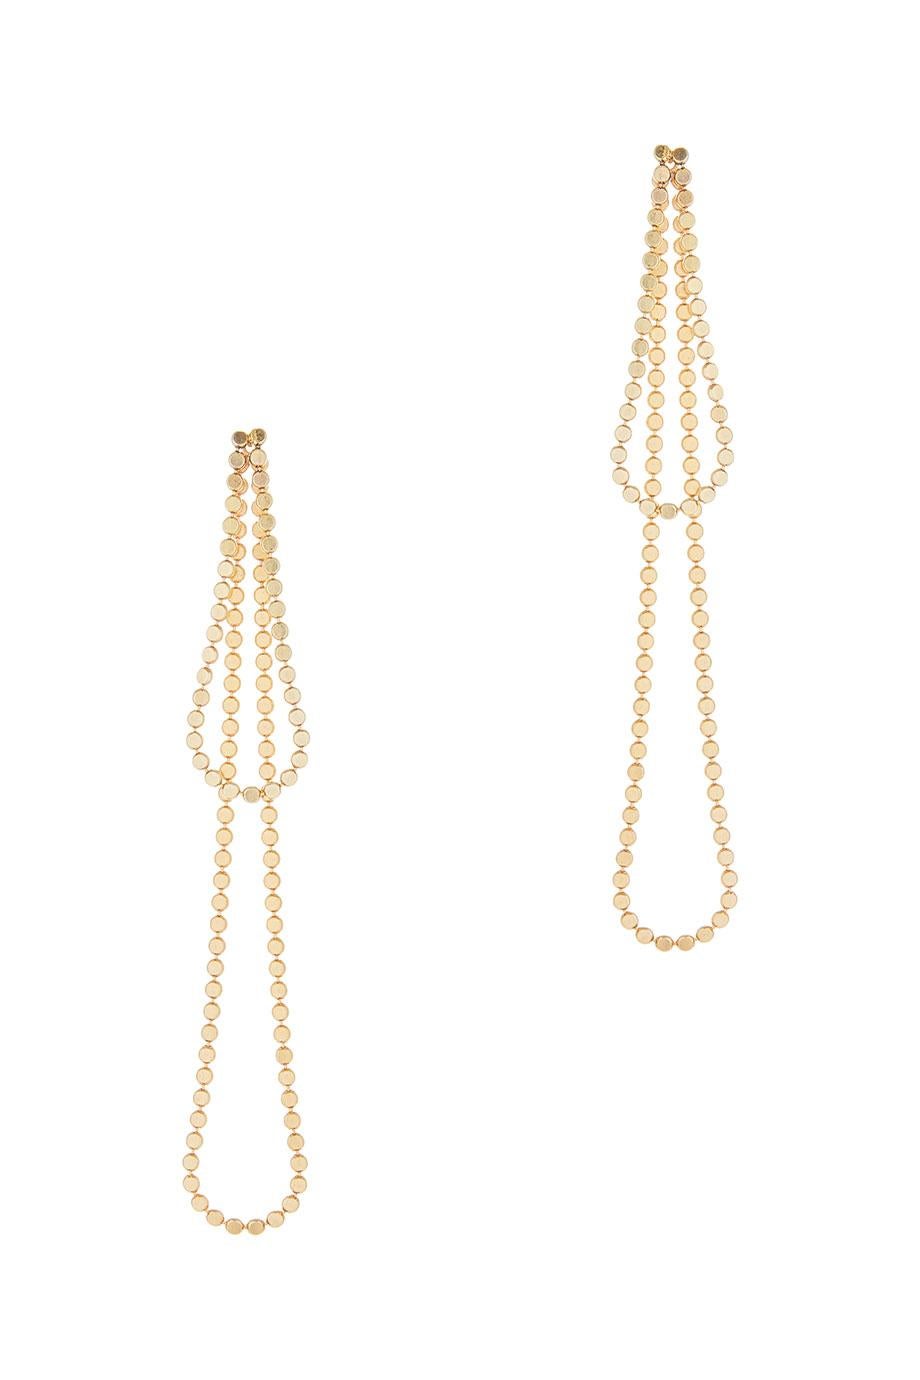 Smart Earrings Long Drop Round Motif Chain 18k Gold-Plated Silver Greek Earrings For Sale 2